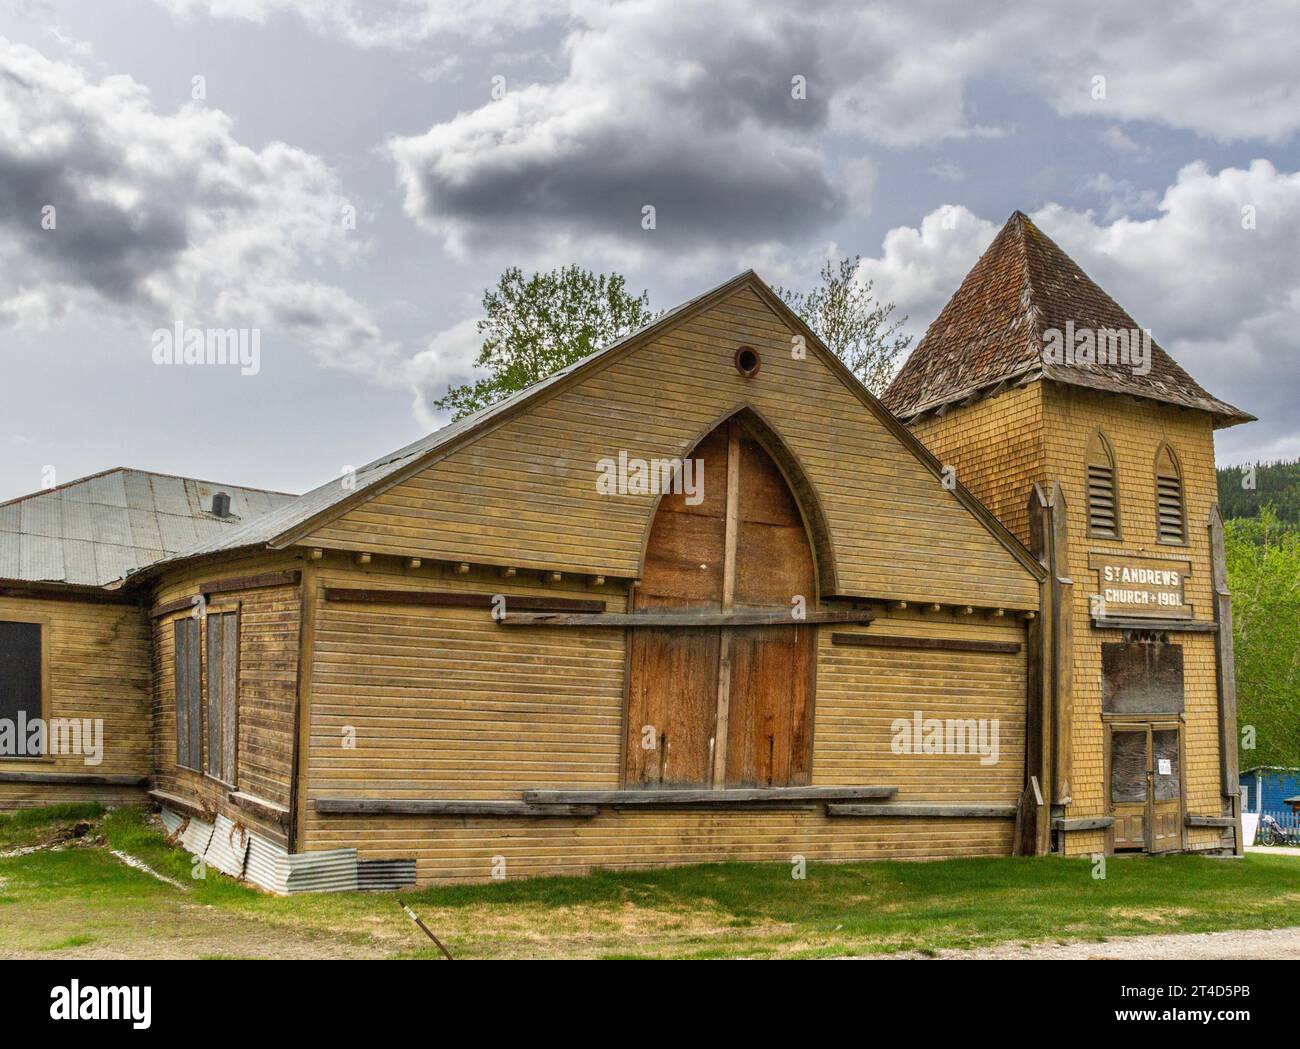 Dawson City nel territorio dello Yukon, Canada, ha un clima subartico e una popolazione di circa 1900 abitanti tutto l'anno. St La Chiesa presbiteriana di Andrew. Foto Stock